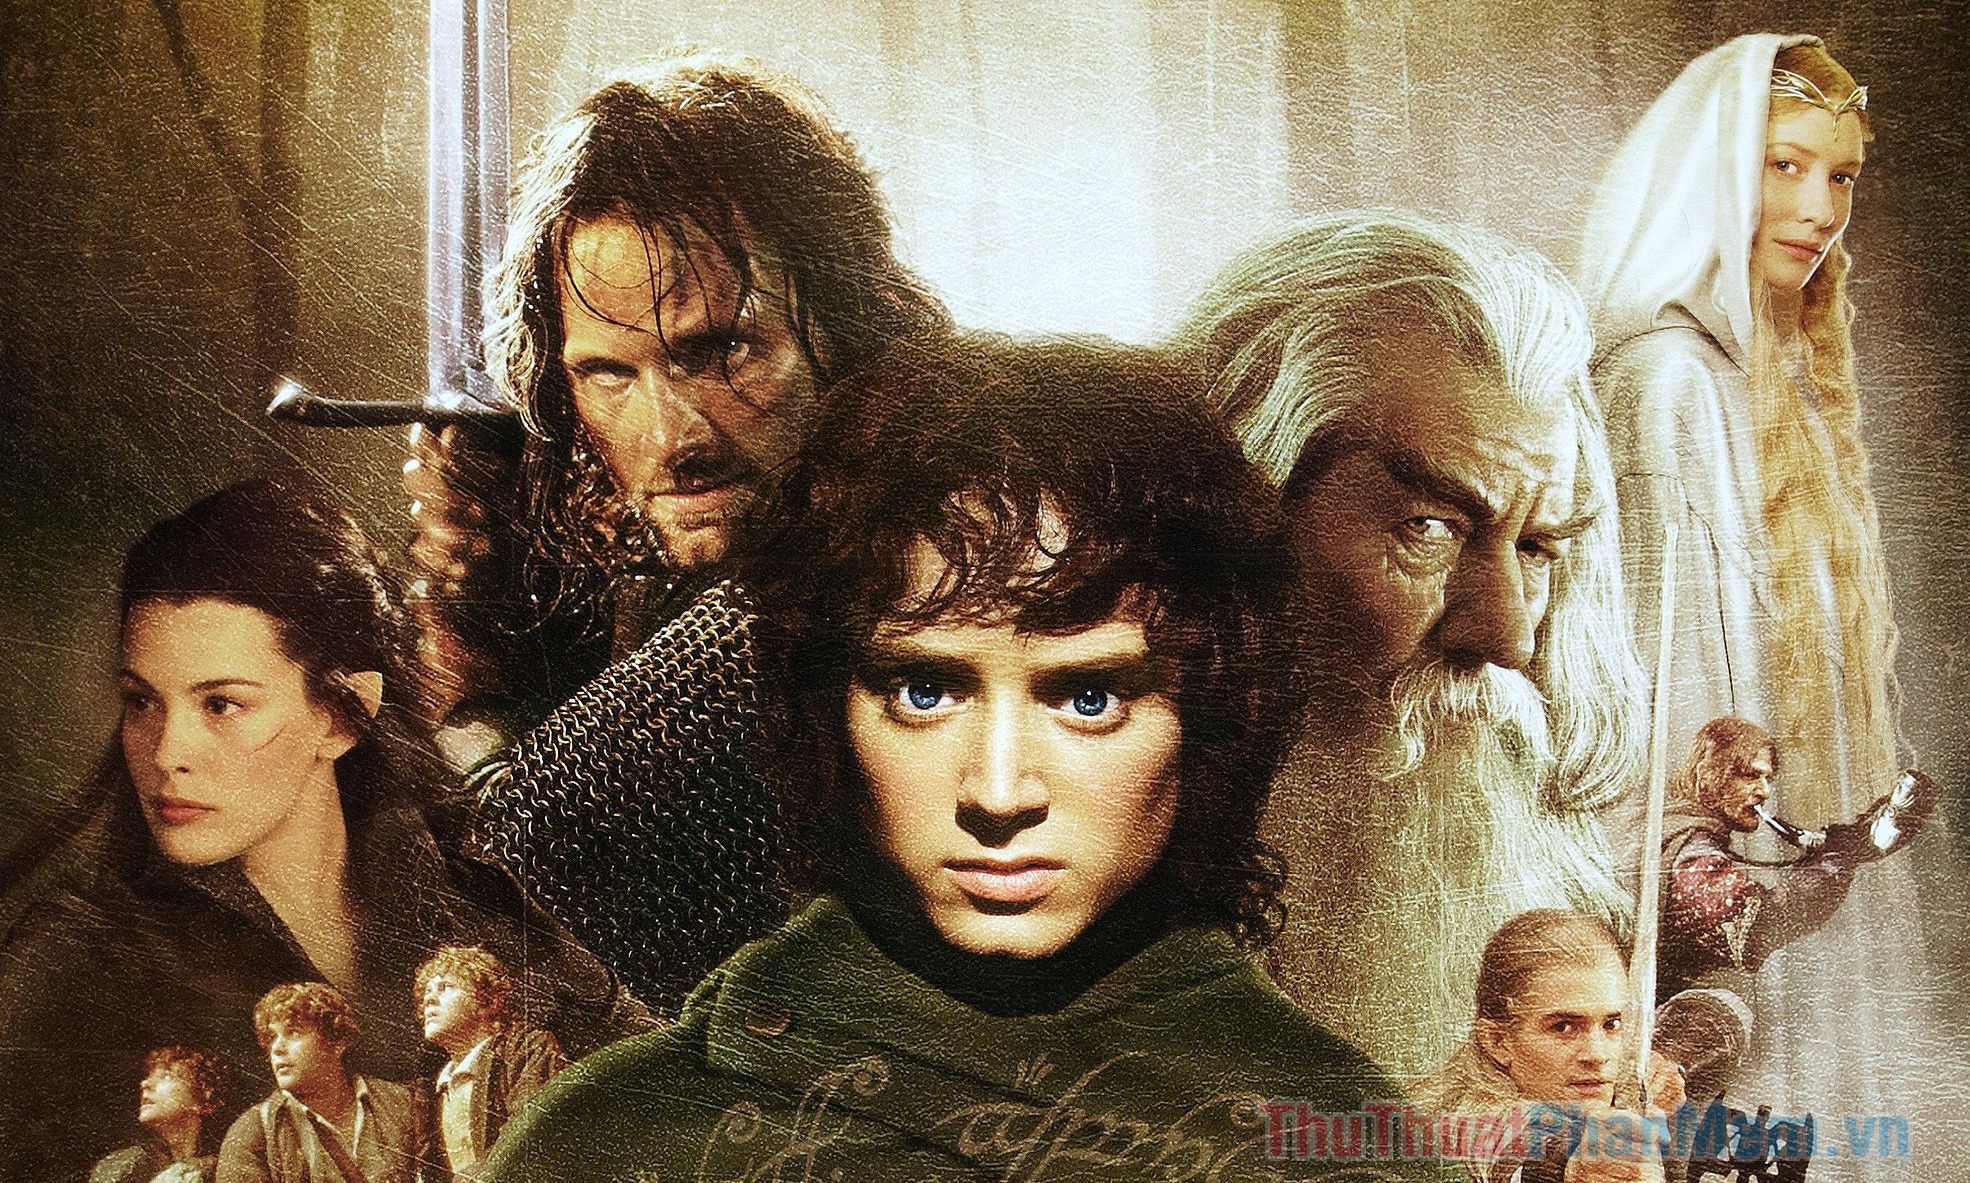 The Lord of the Rings & The Hobbit (từ 2001) – Chúa tể của những chiếc nhẫn & Người Hobbit